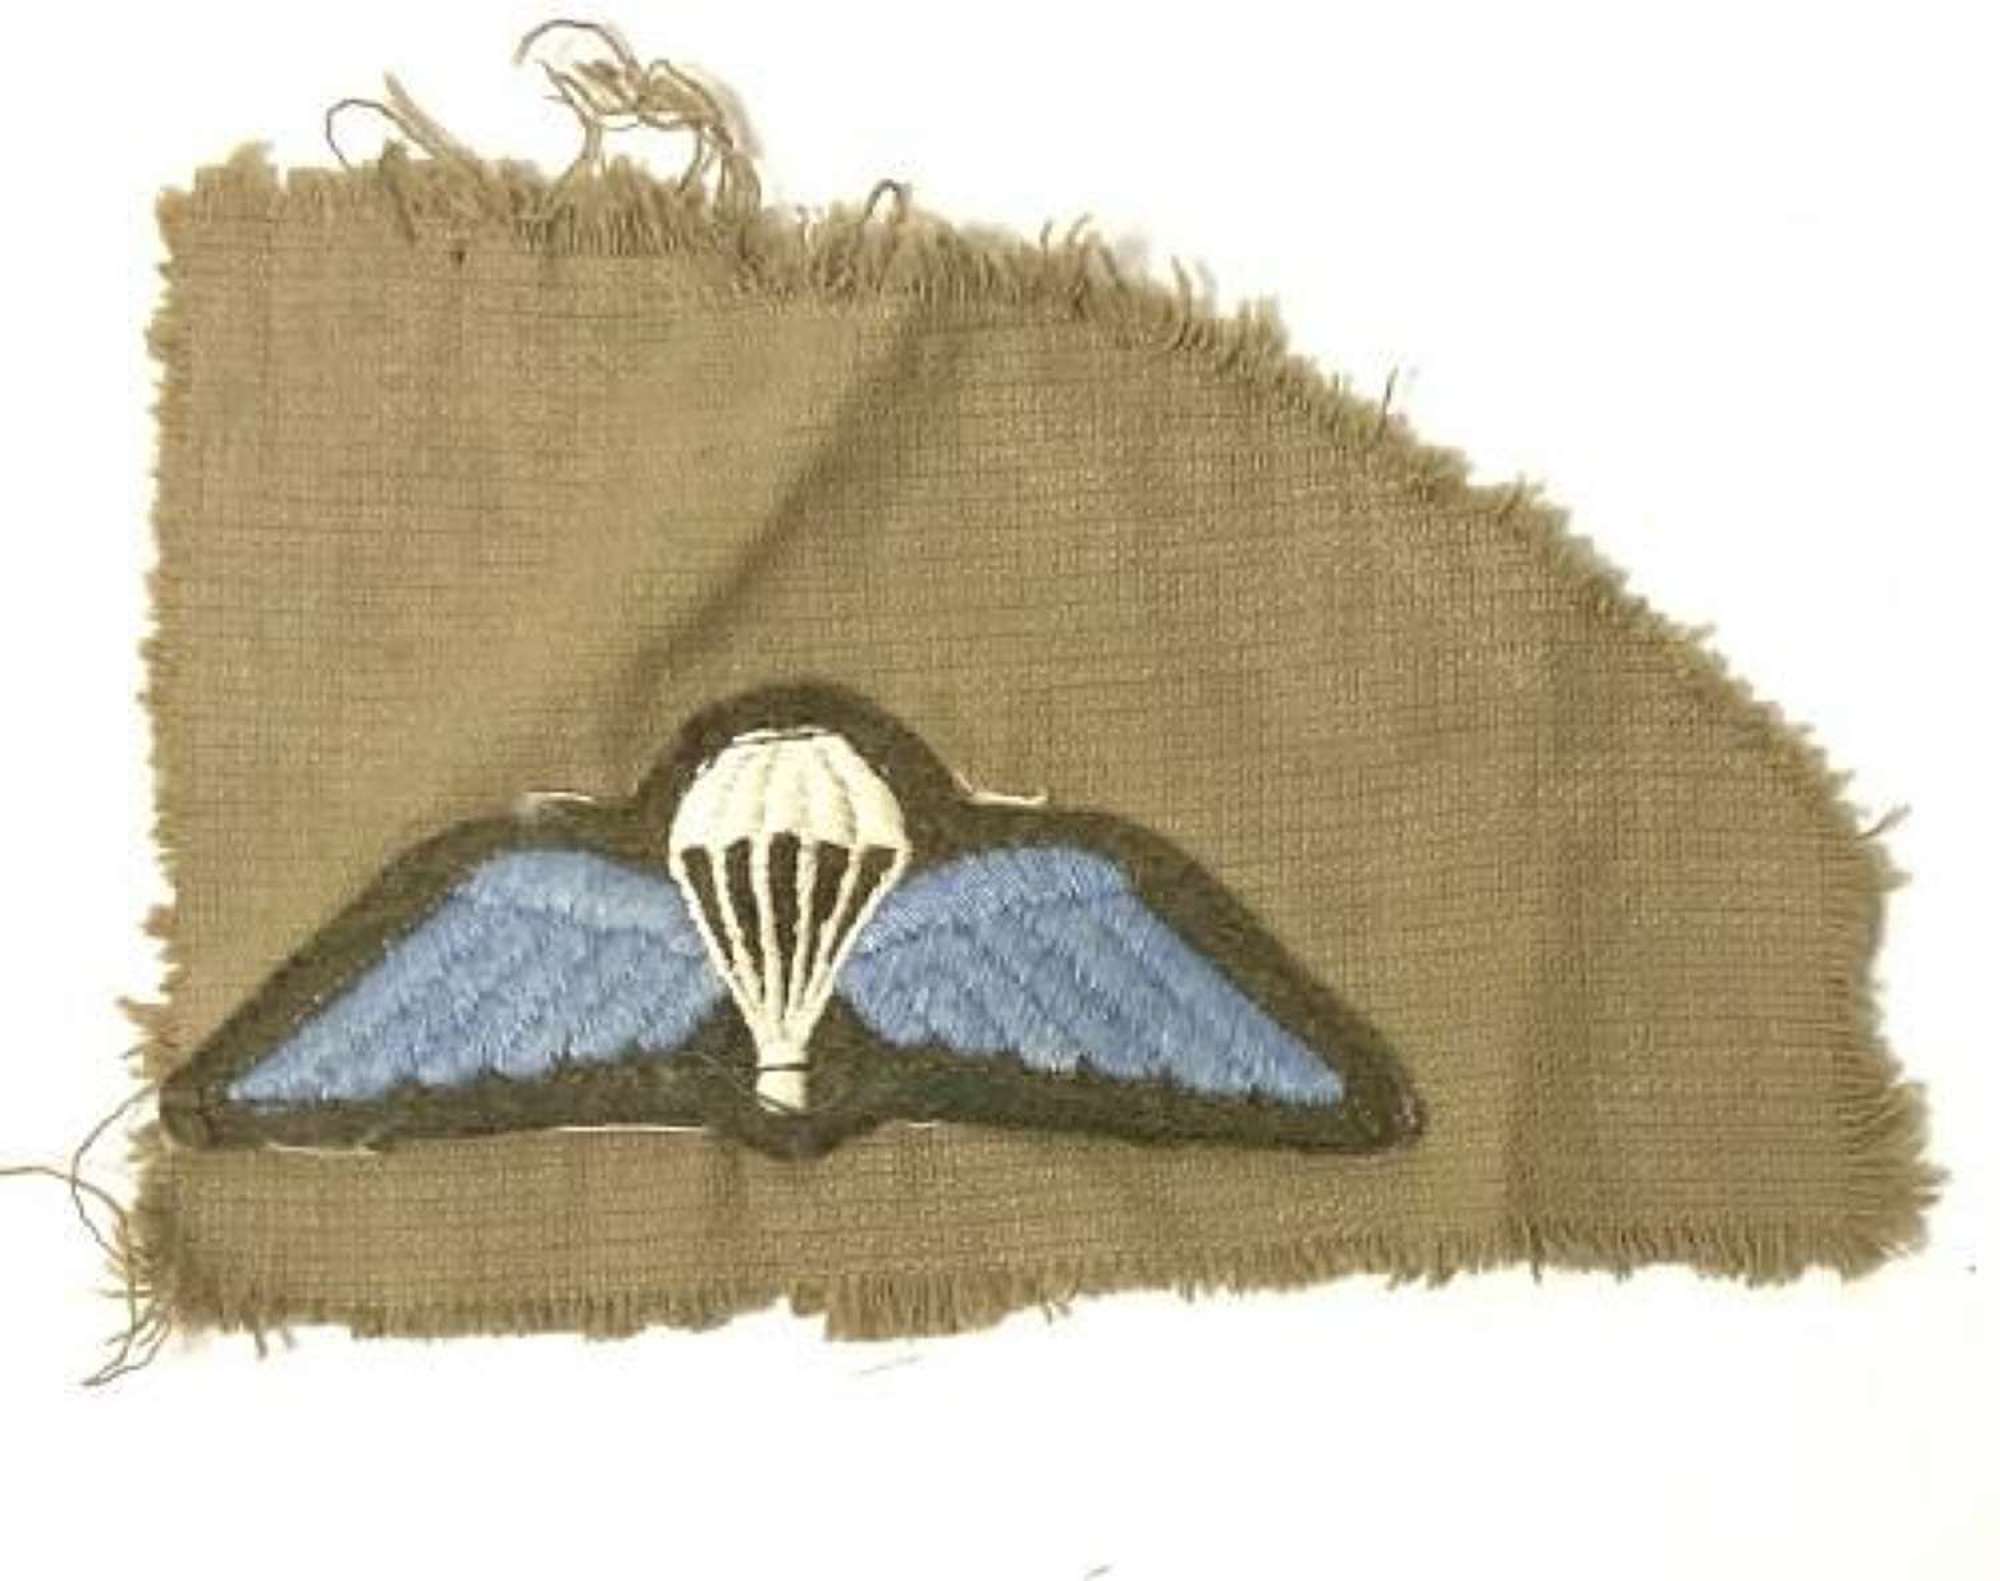 Original 1950s British Army Parachute Qualification Badge